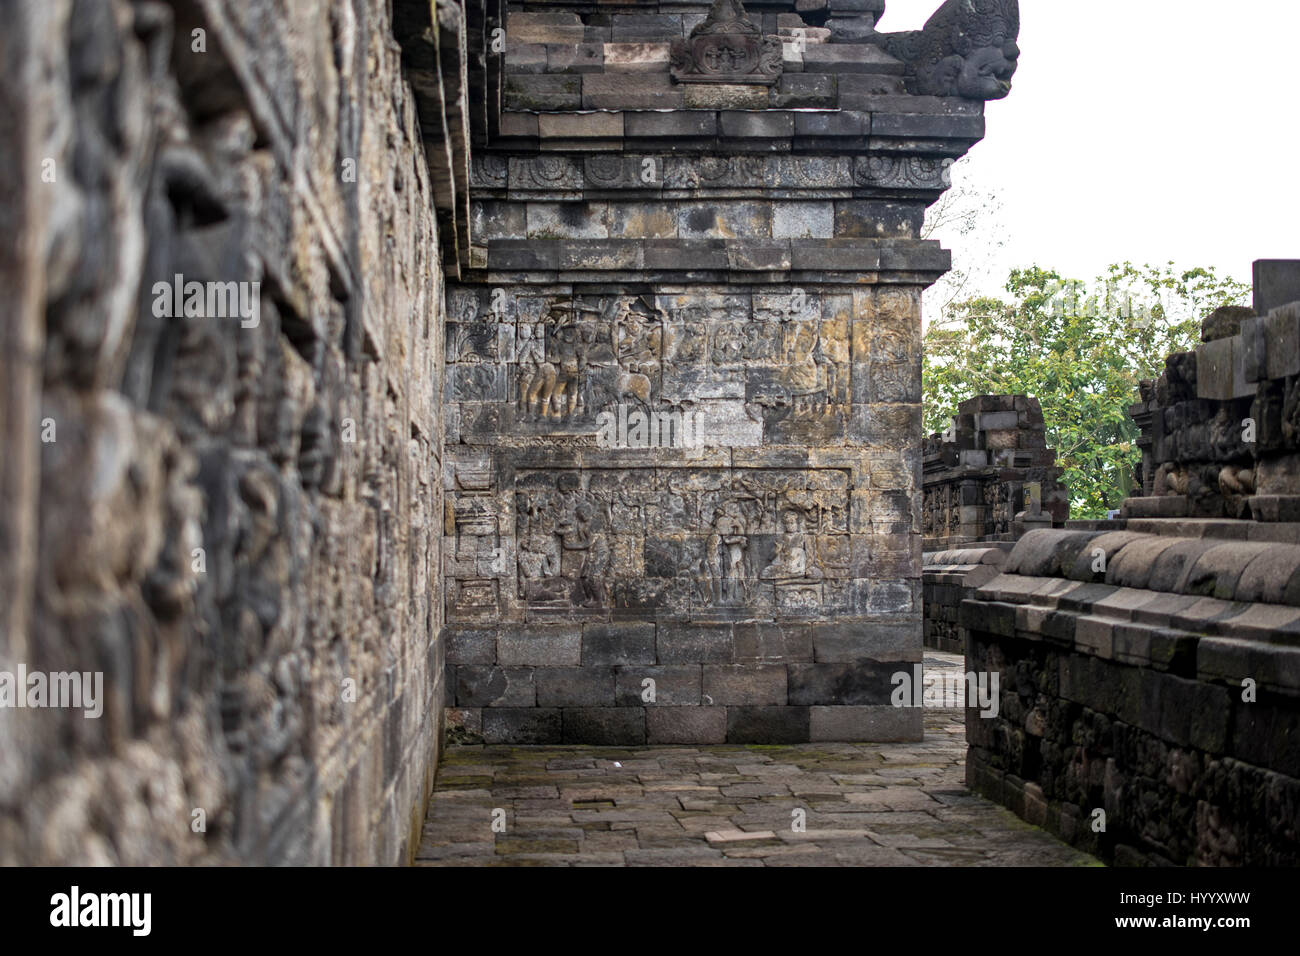 Temple de Borobudur, Yogyakarta, Indonésie, le plus grand temple bouddhiste du monde, UNESCO World Heritage Site Banque D'Images